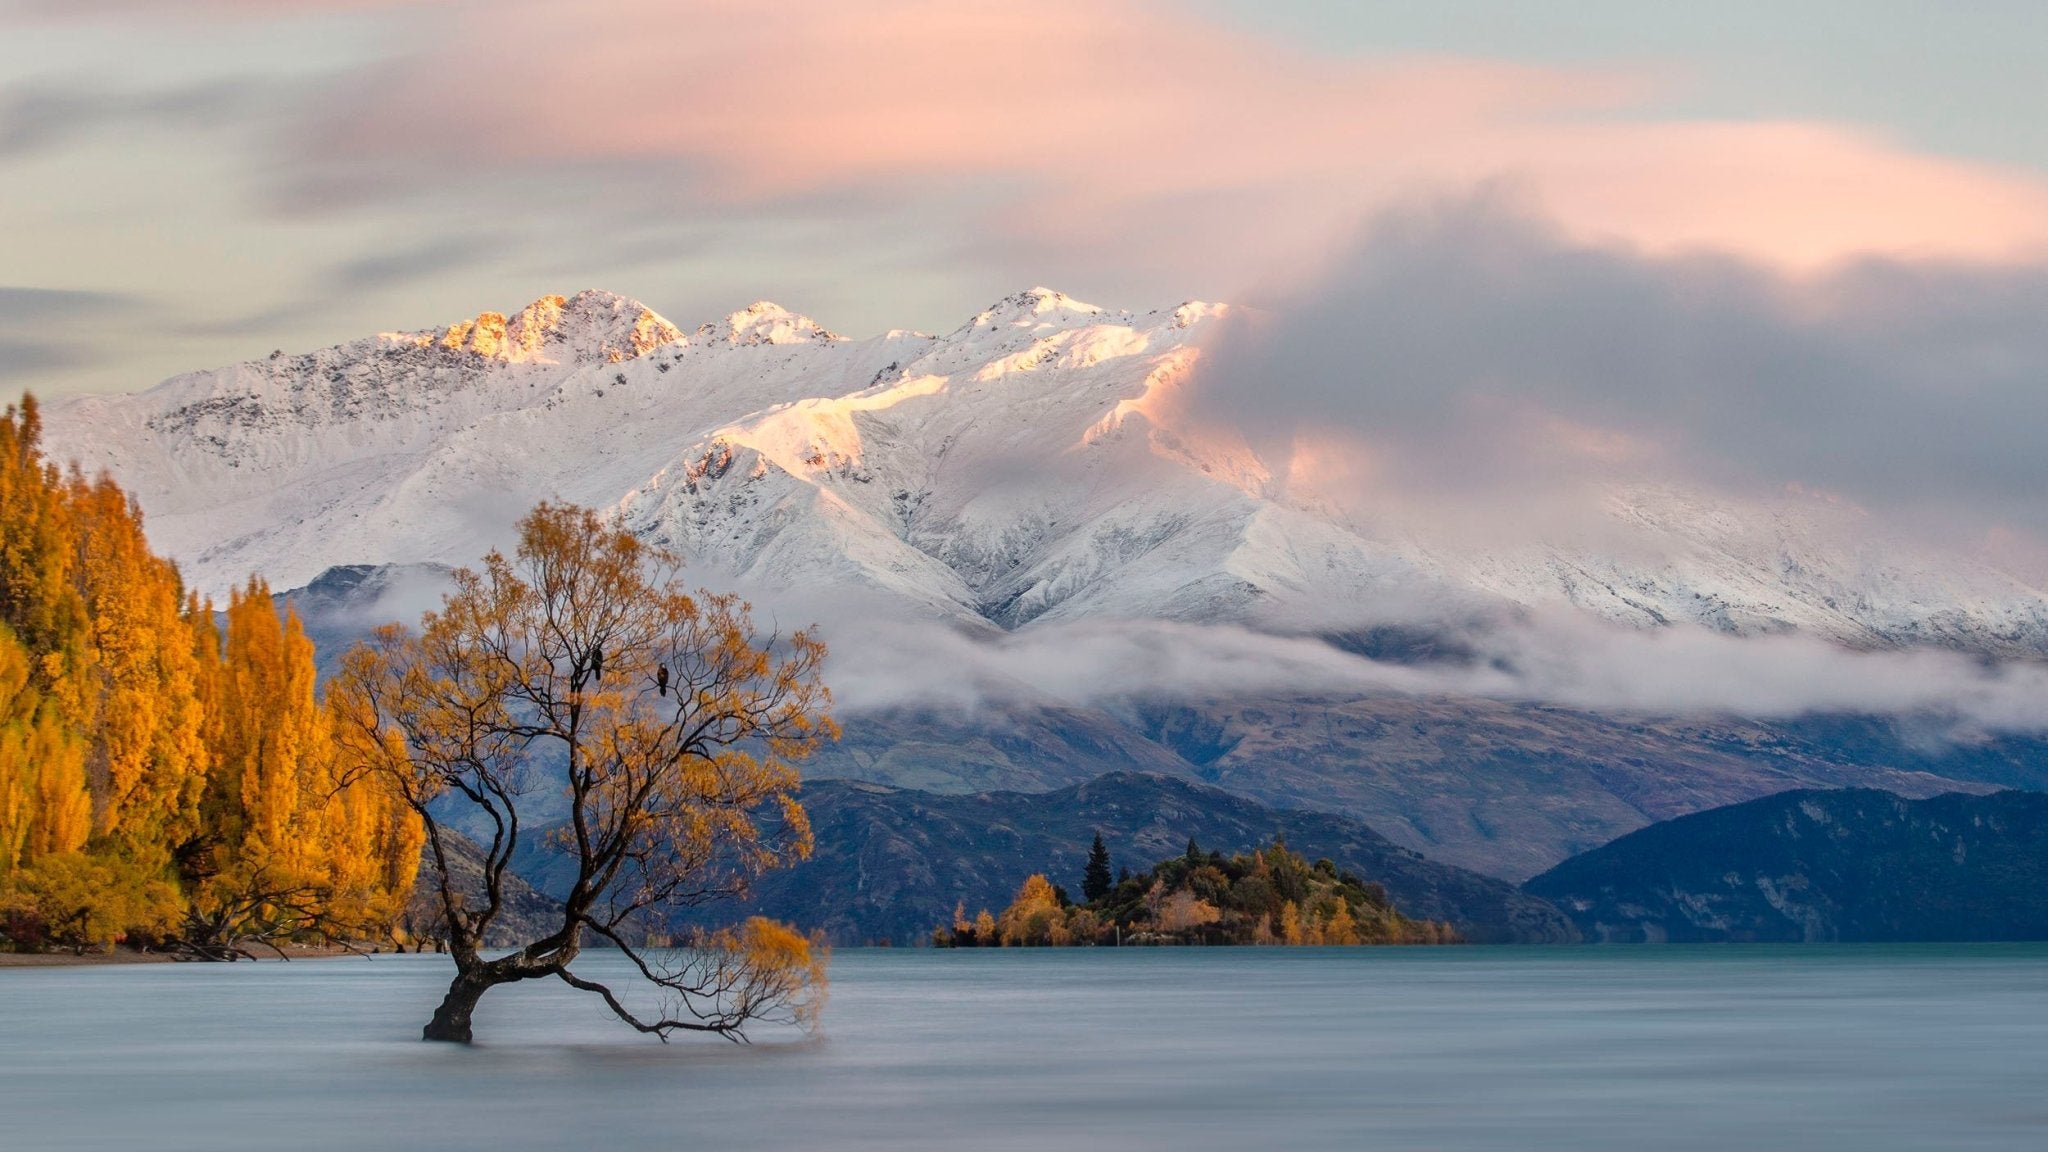 "That Tree" Wanaka, New Zealand.